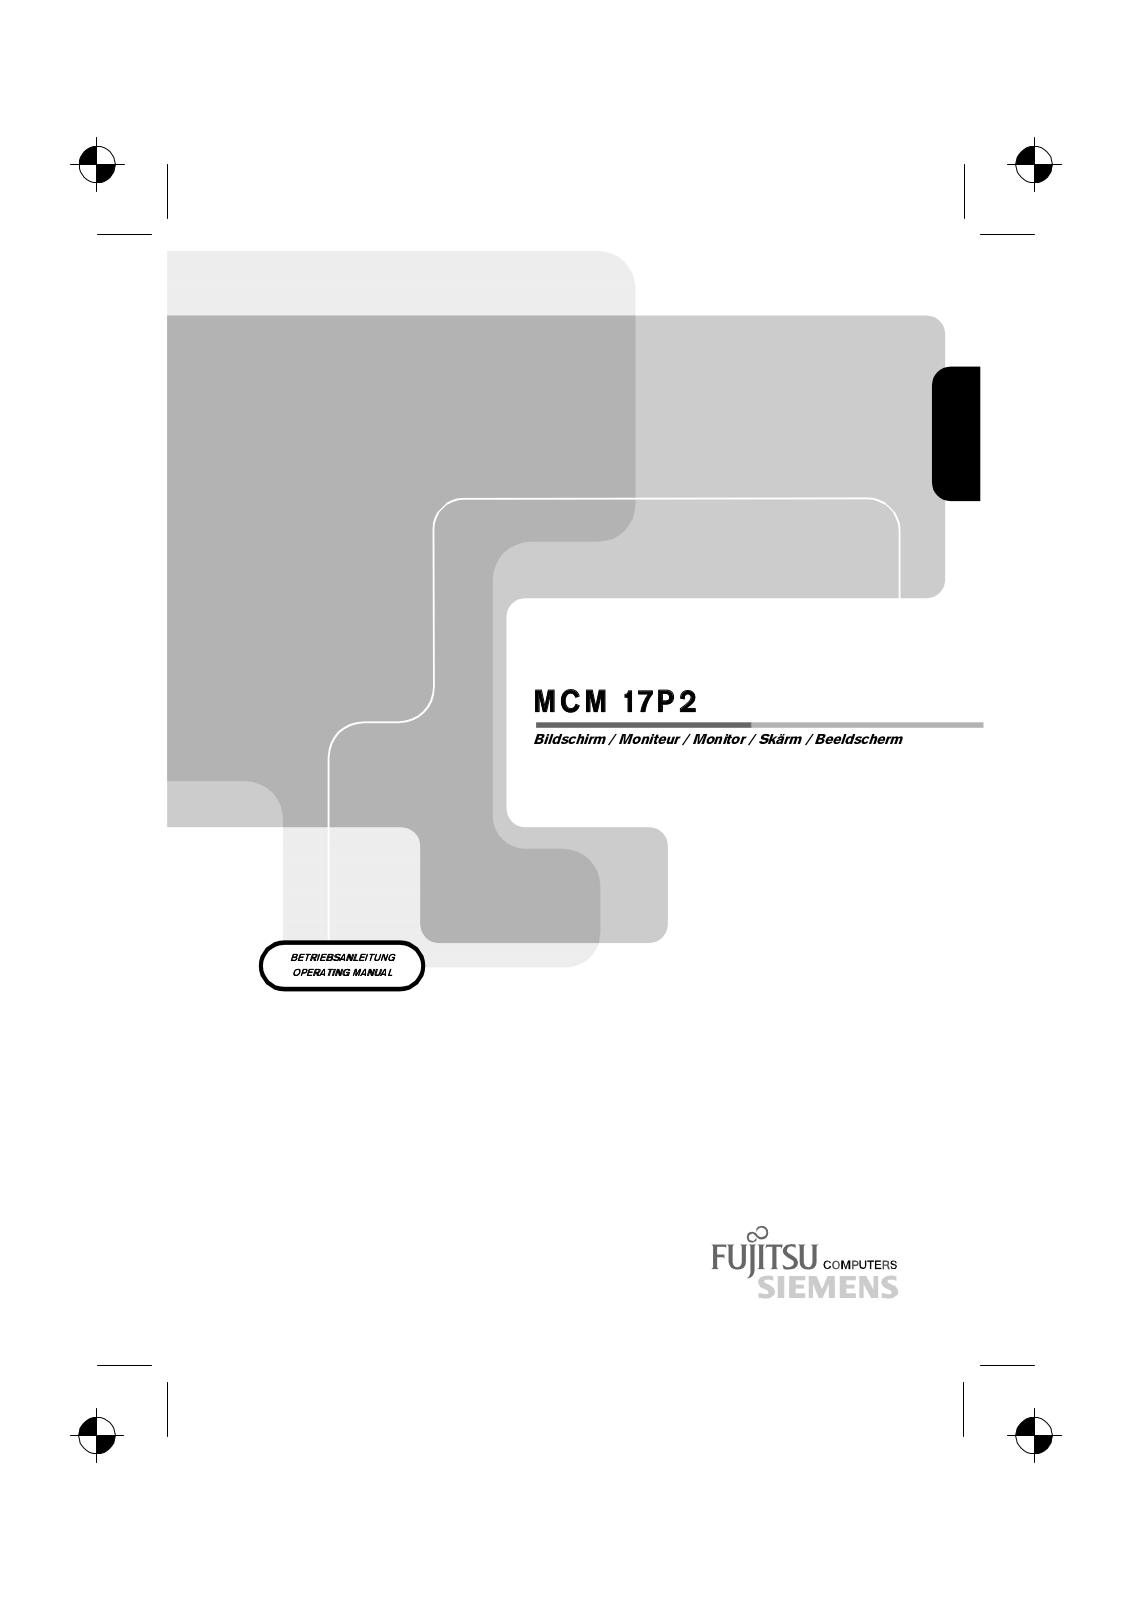 Fujitsu MCM 17P2 User Manual